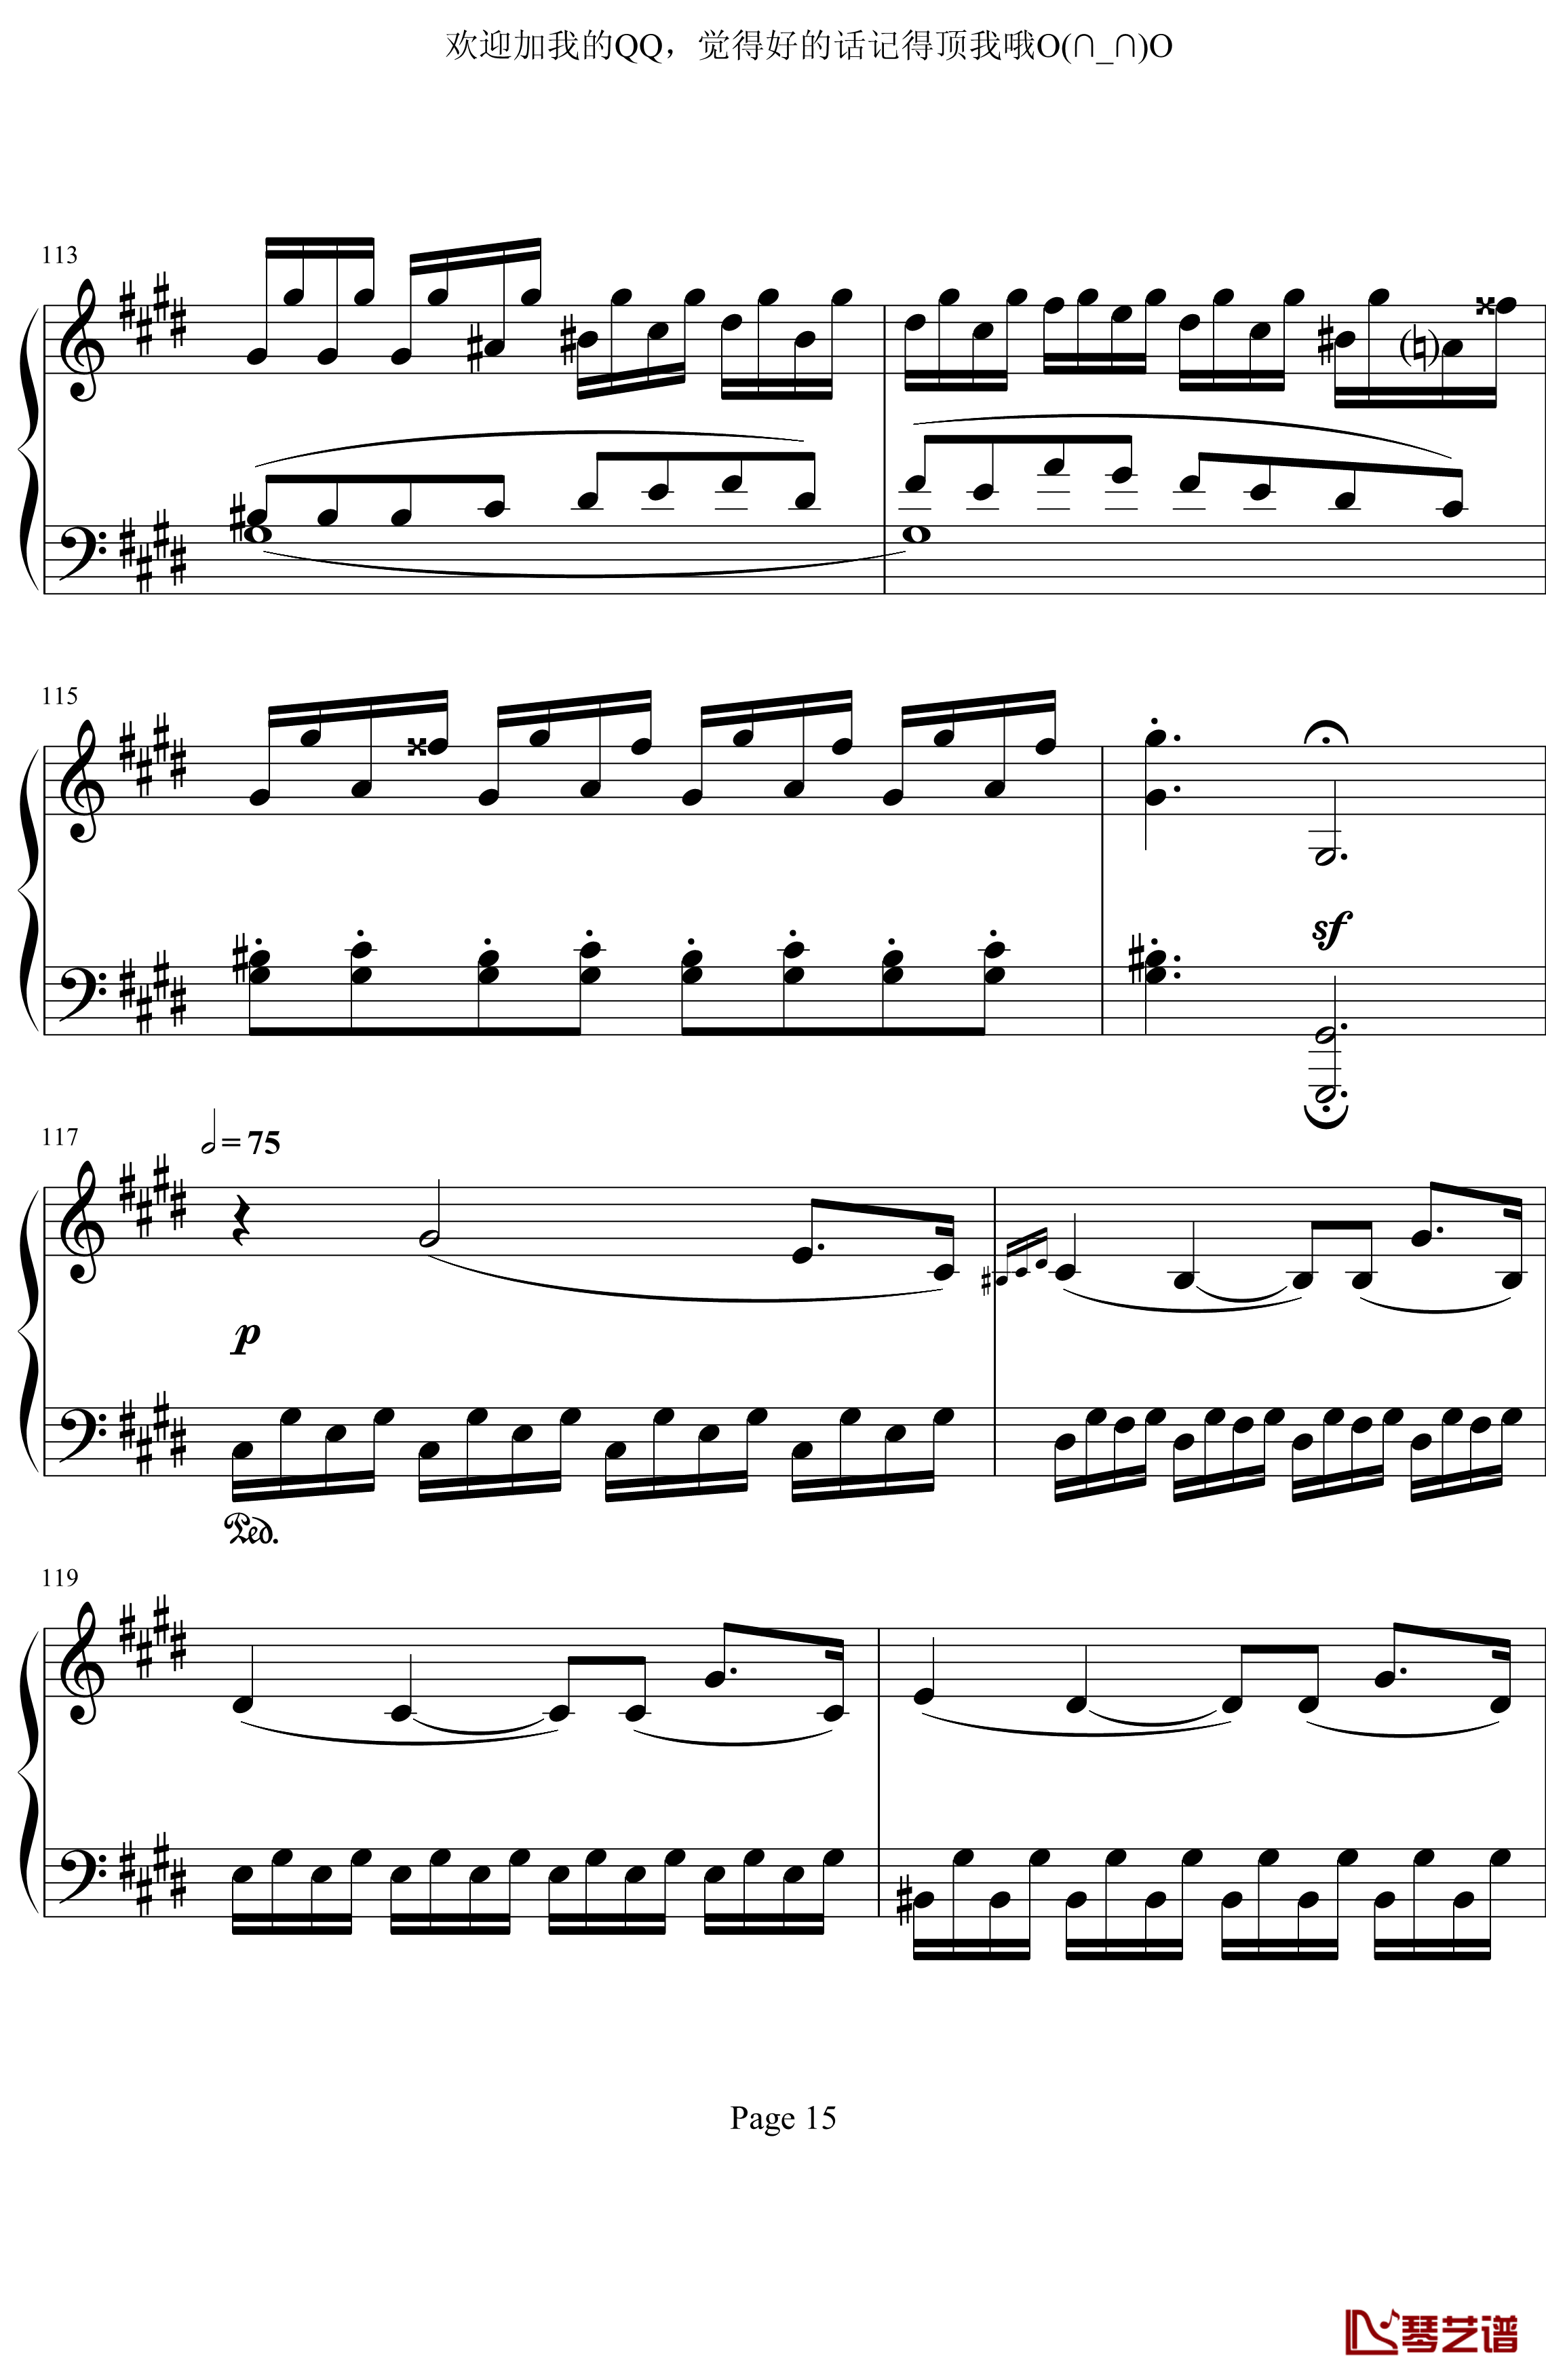 月光奏鸣曲第三乐章钢琴谱-贝多芬-beethoven15